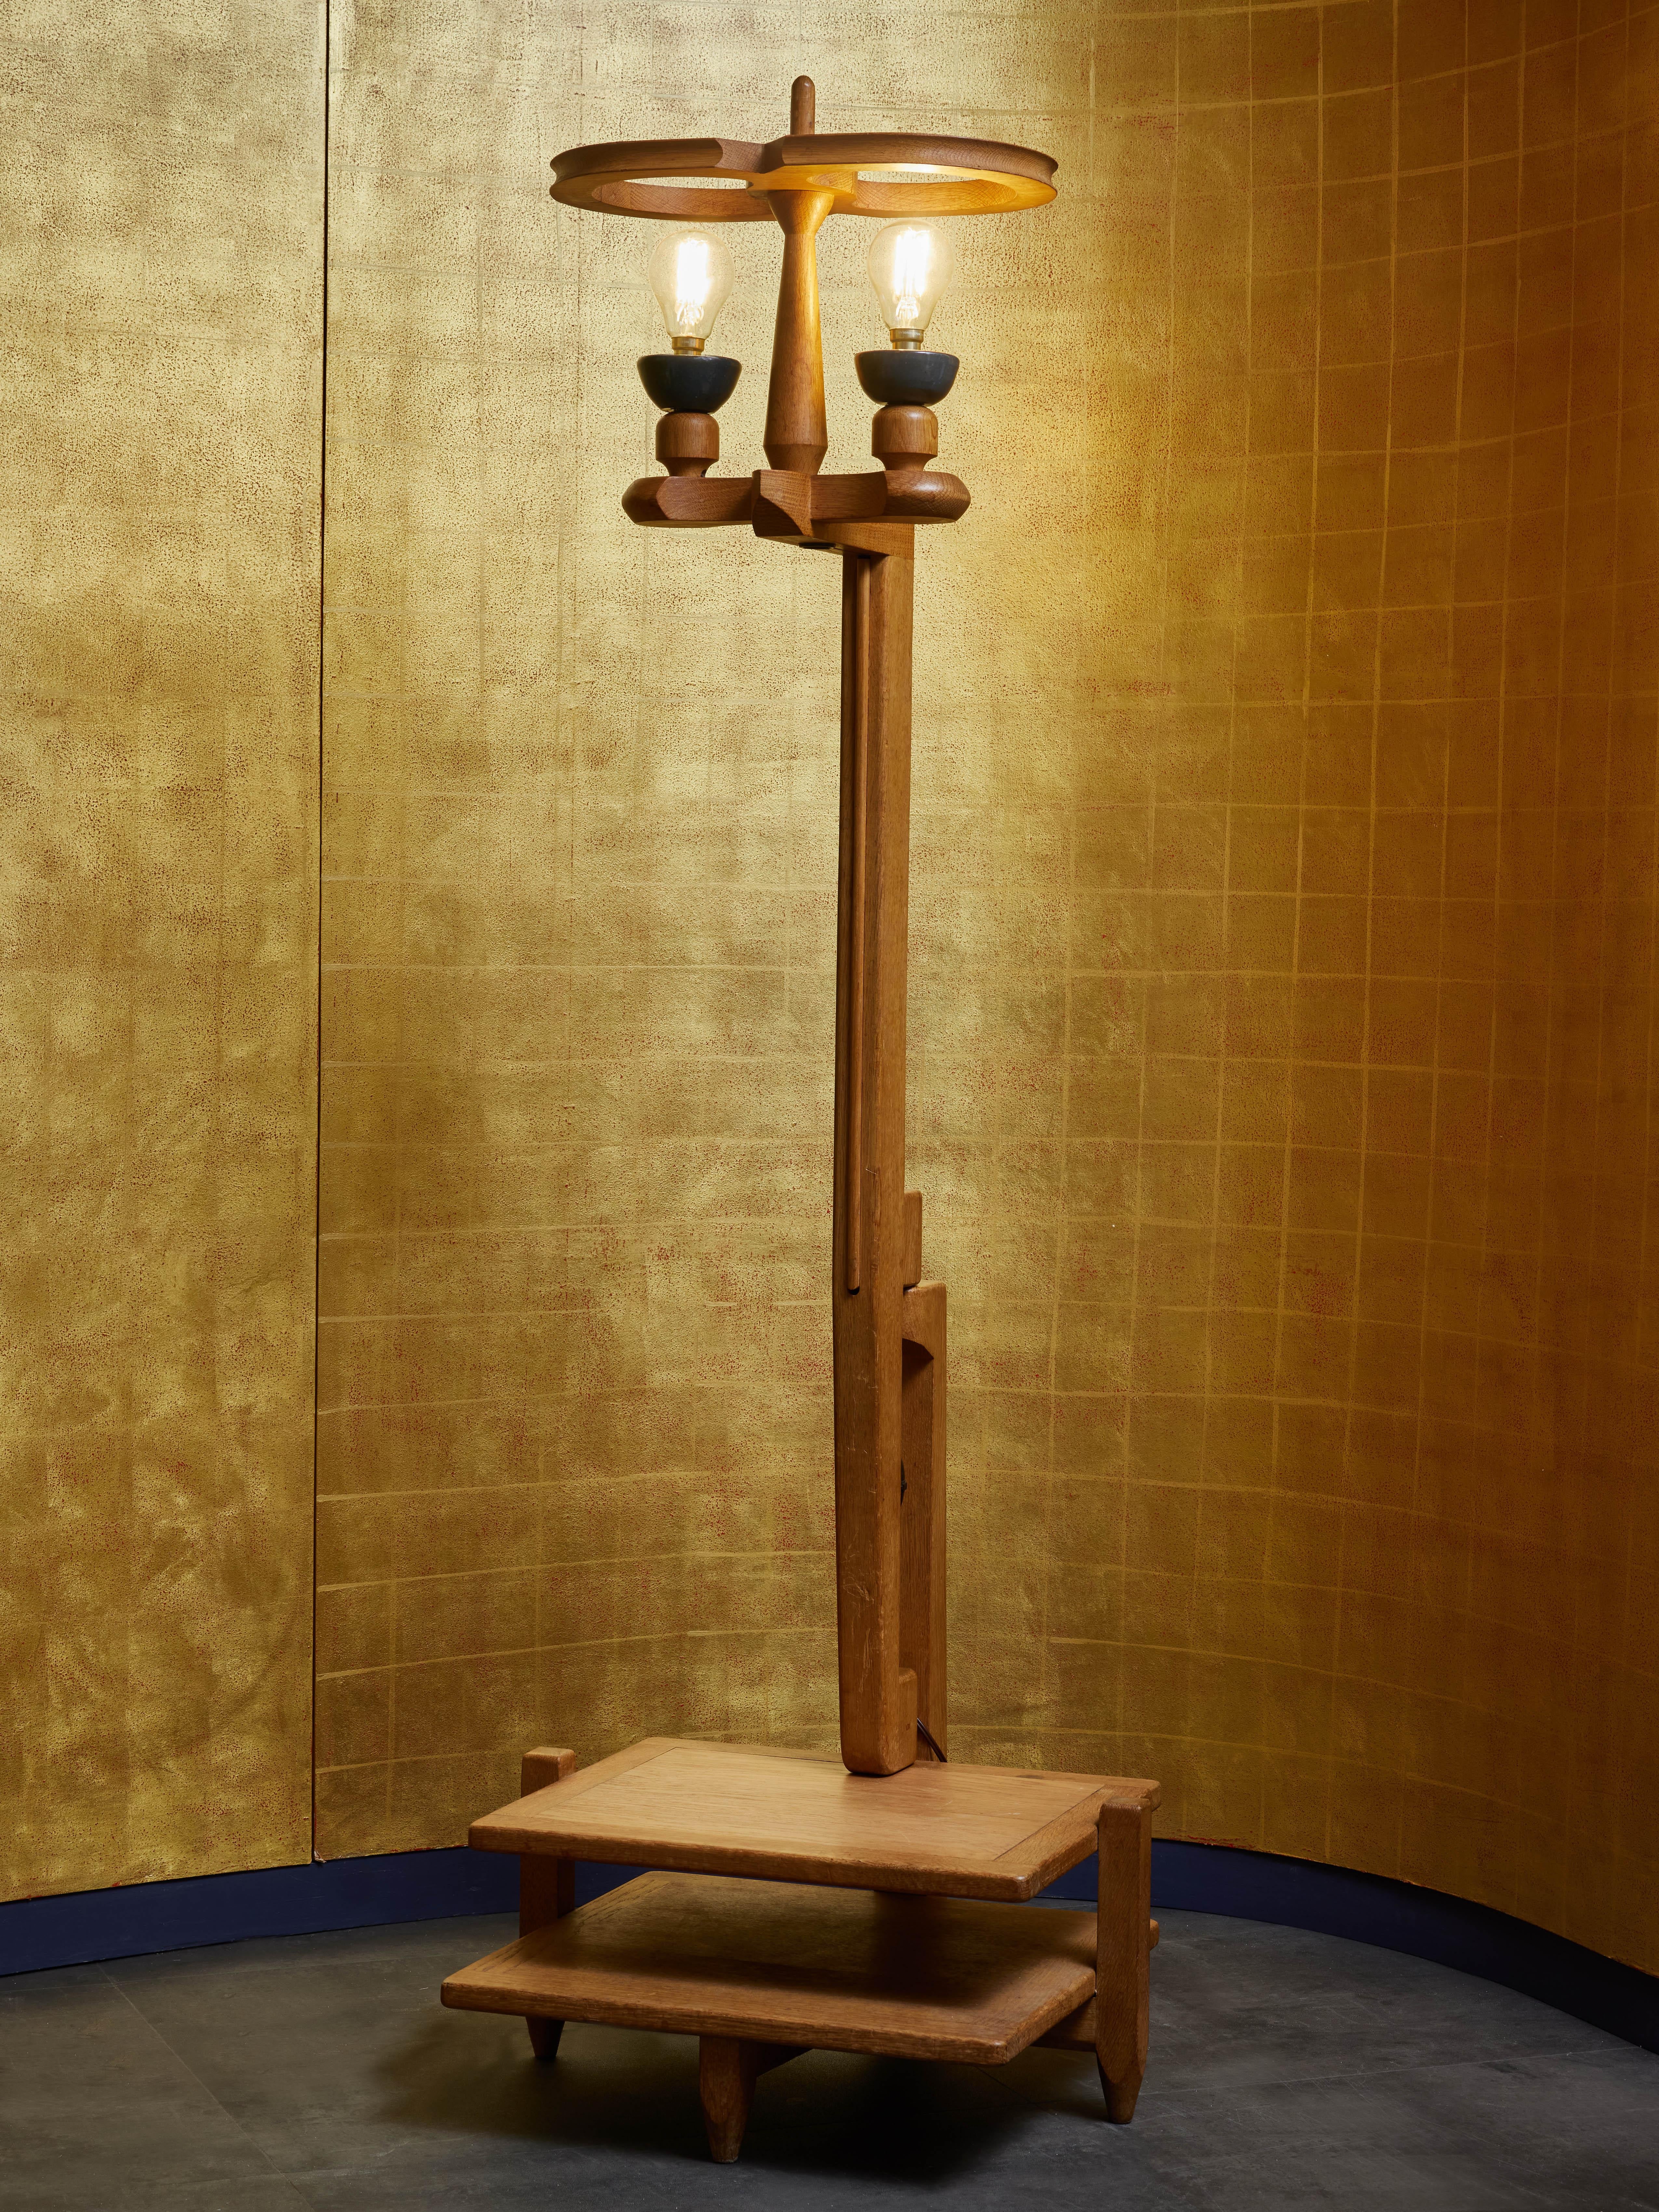 Lampadaire vintage conçu par Guillerme et Chambron pour leur maison d'édition Votre Maison.

Fabriqué en bois de chêne, ce lampadaire est doté d'un double plateau intégré à la base, d'une pièce centrale rotative et d'un support d'ampoule en